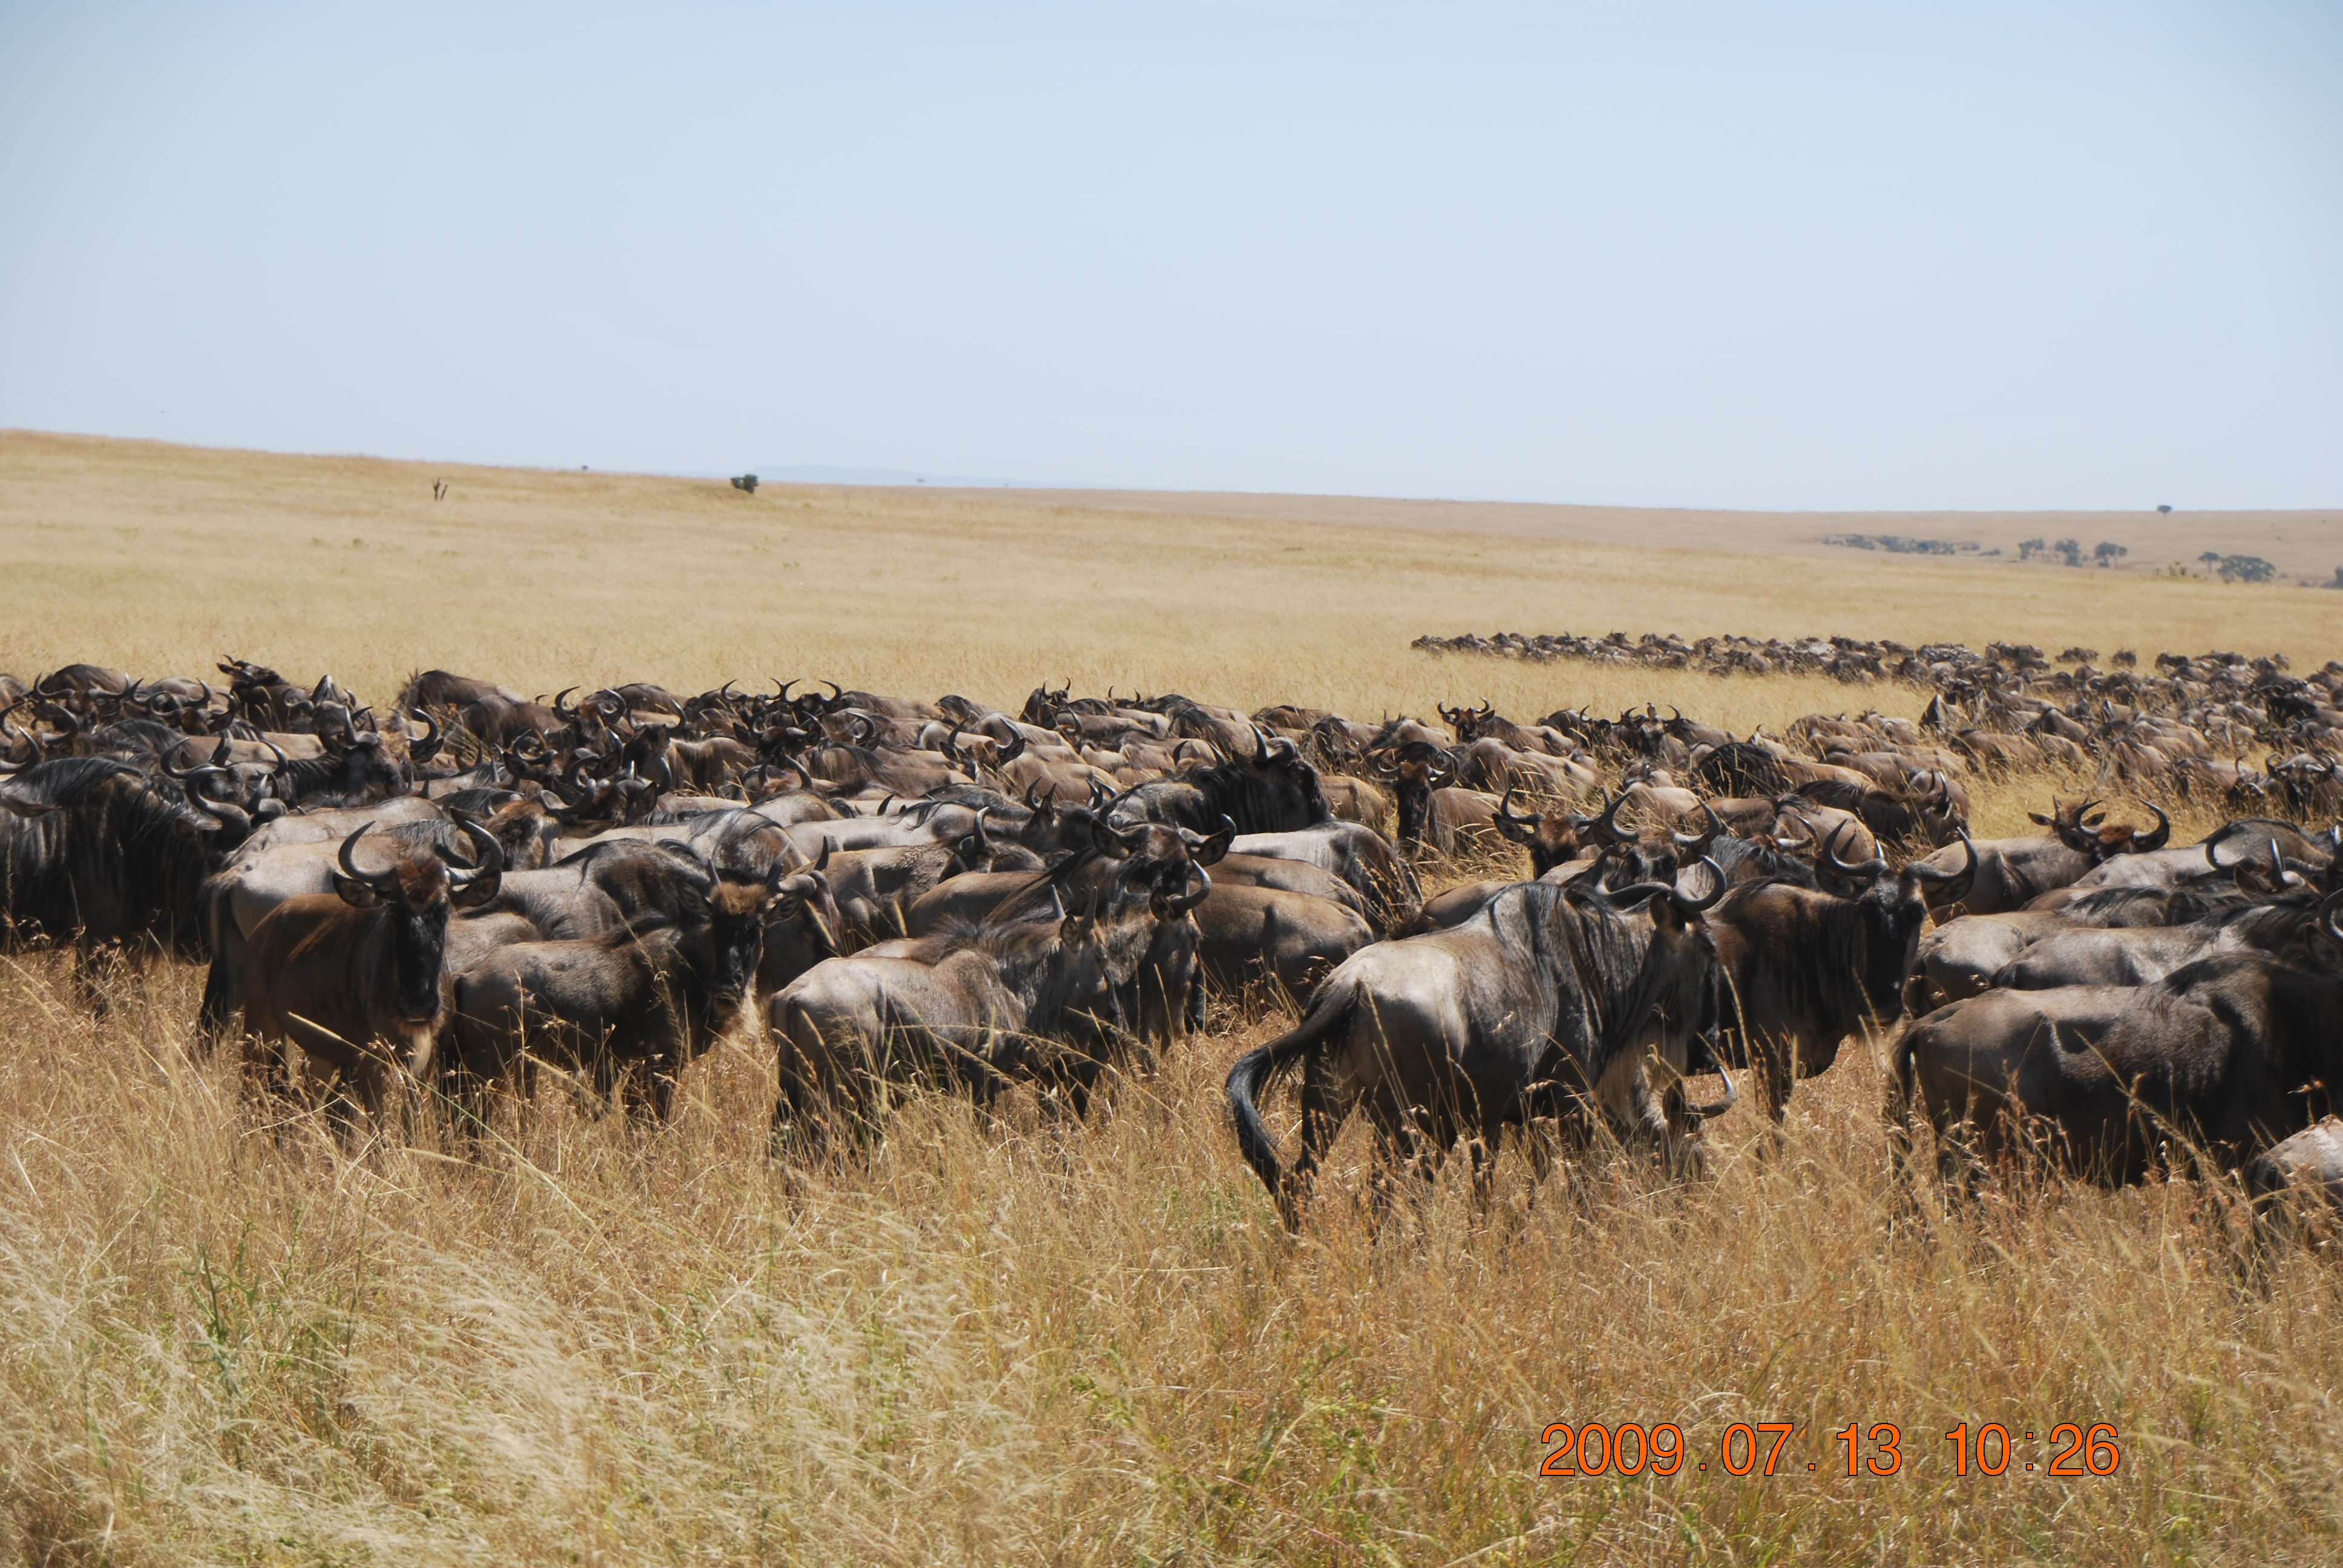 Kenia una experiencia inolvidable - Blogs de Kenia - El cruce del río Mara. (6)